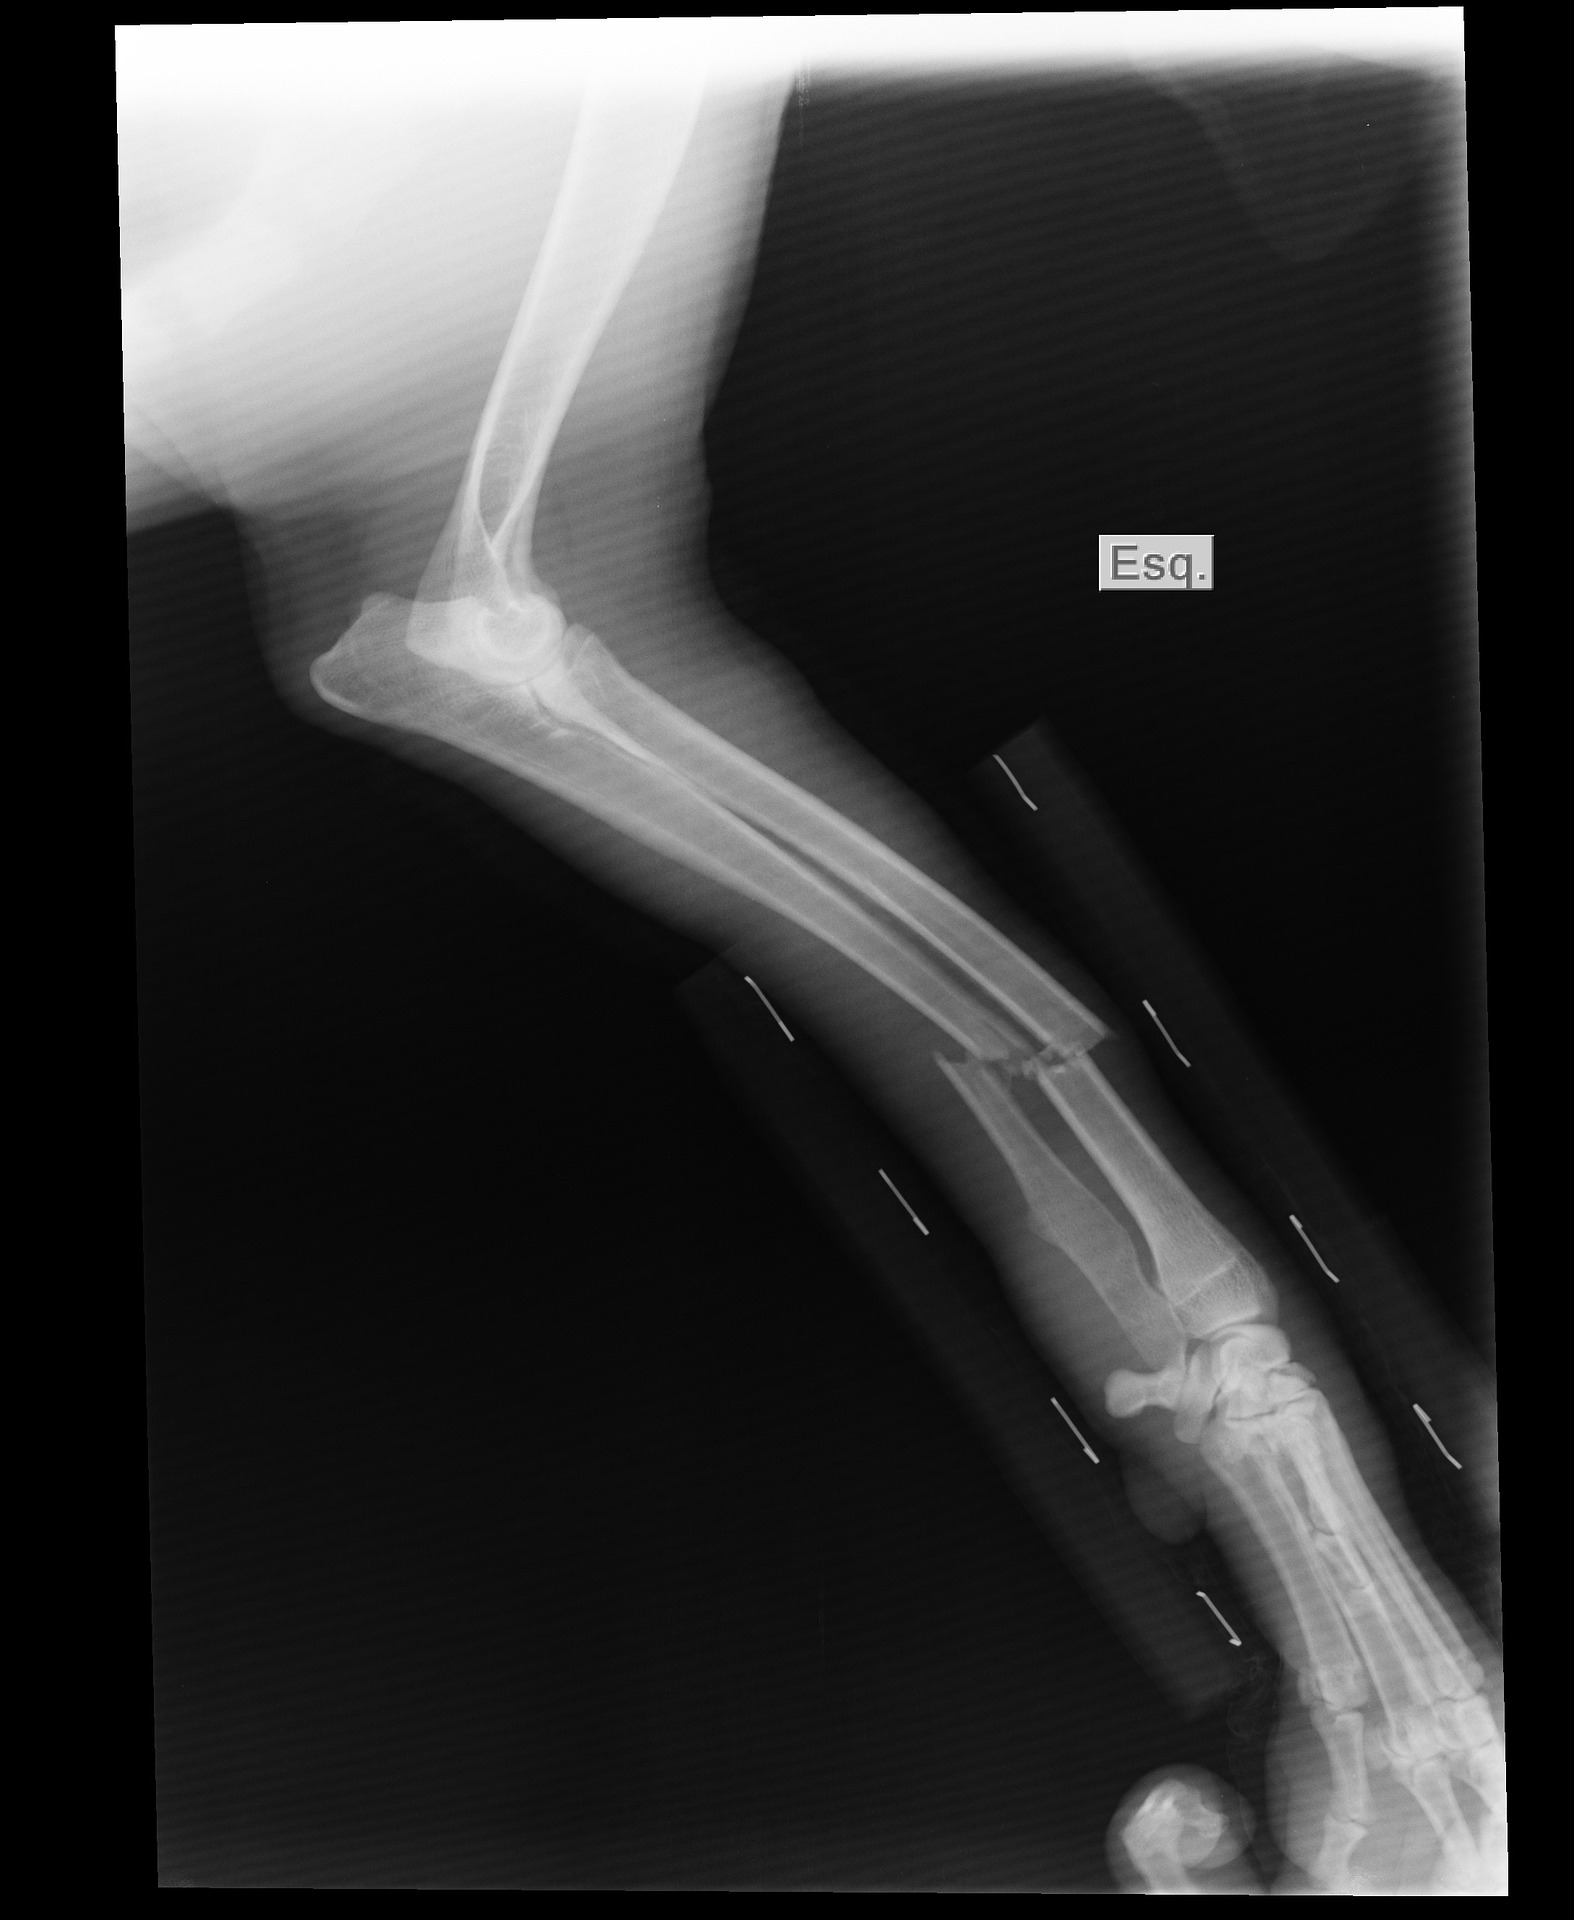 broken-arm-1188175_1920